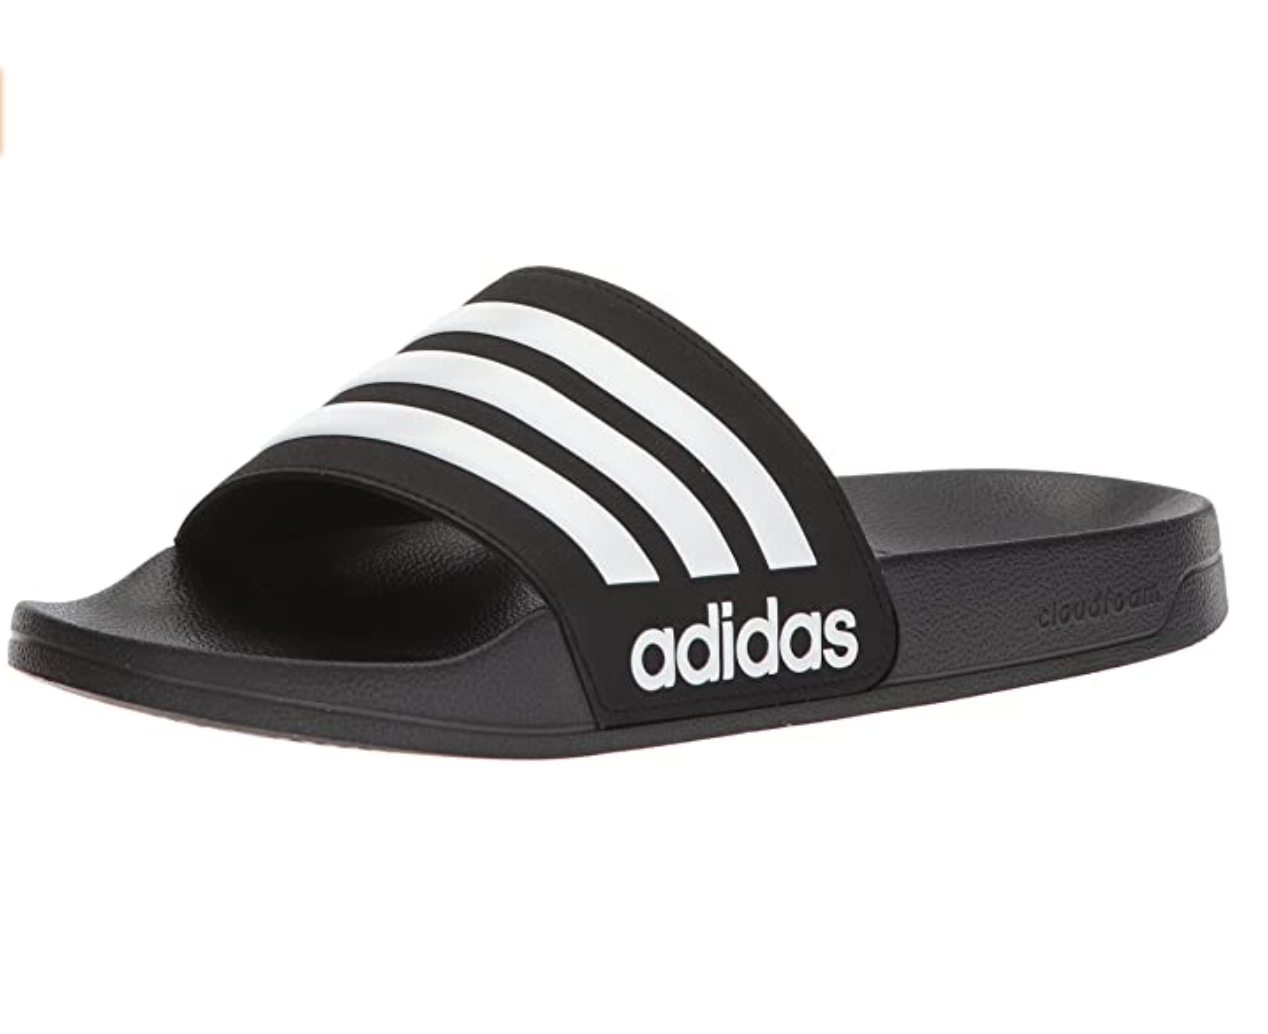 adidas Adilette Contoured Cloudfoam Men’s Slide Sandals